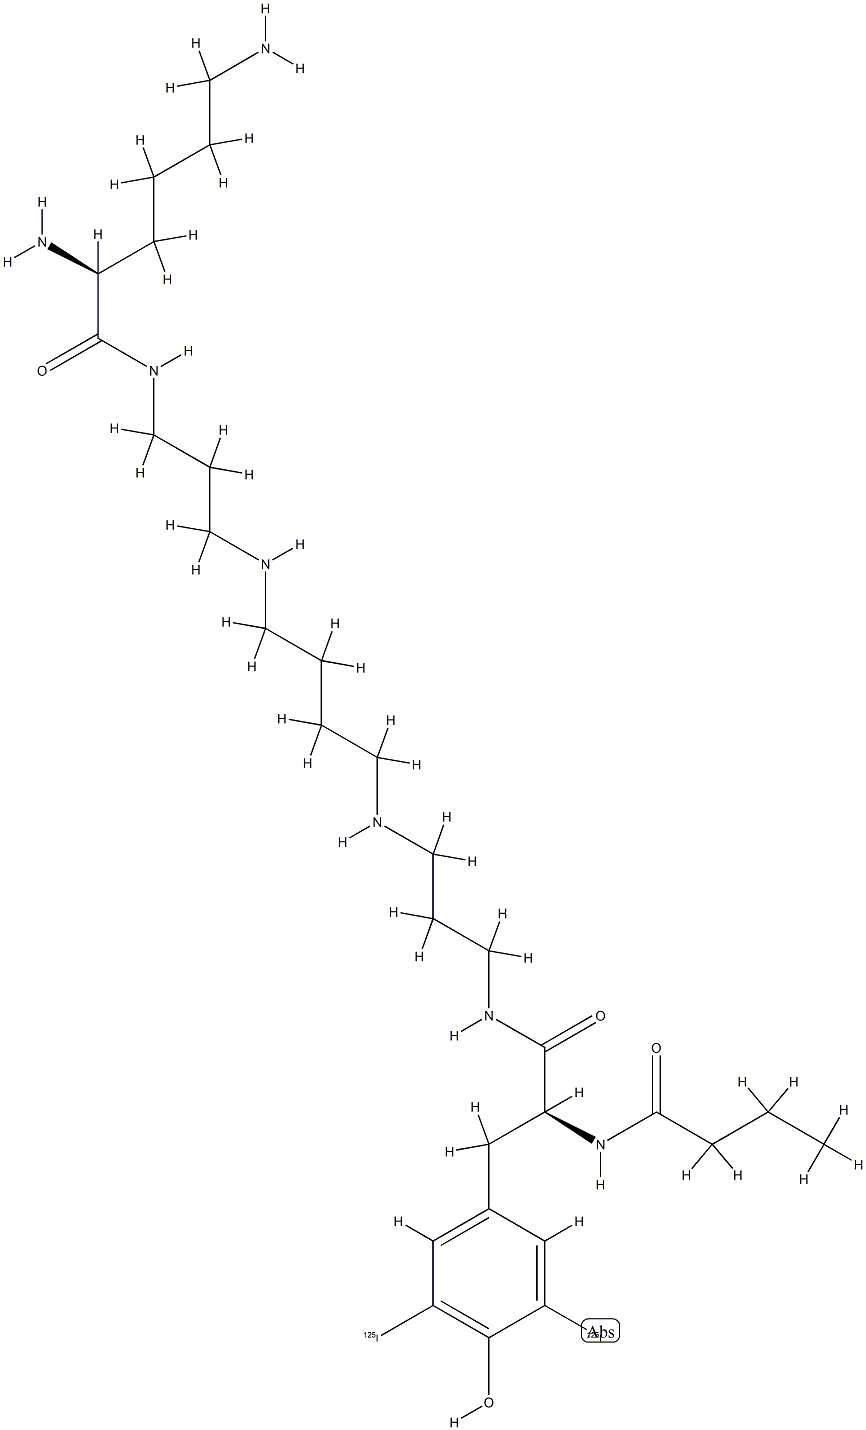 diiodo-philanthotoxin-343-lysine